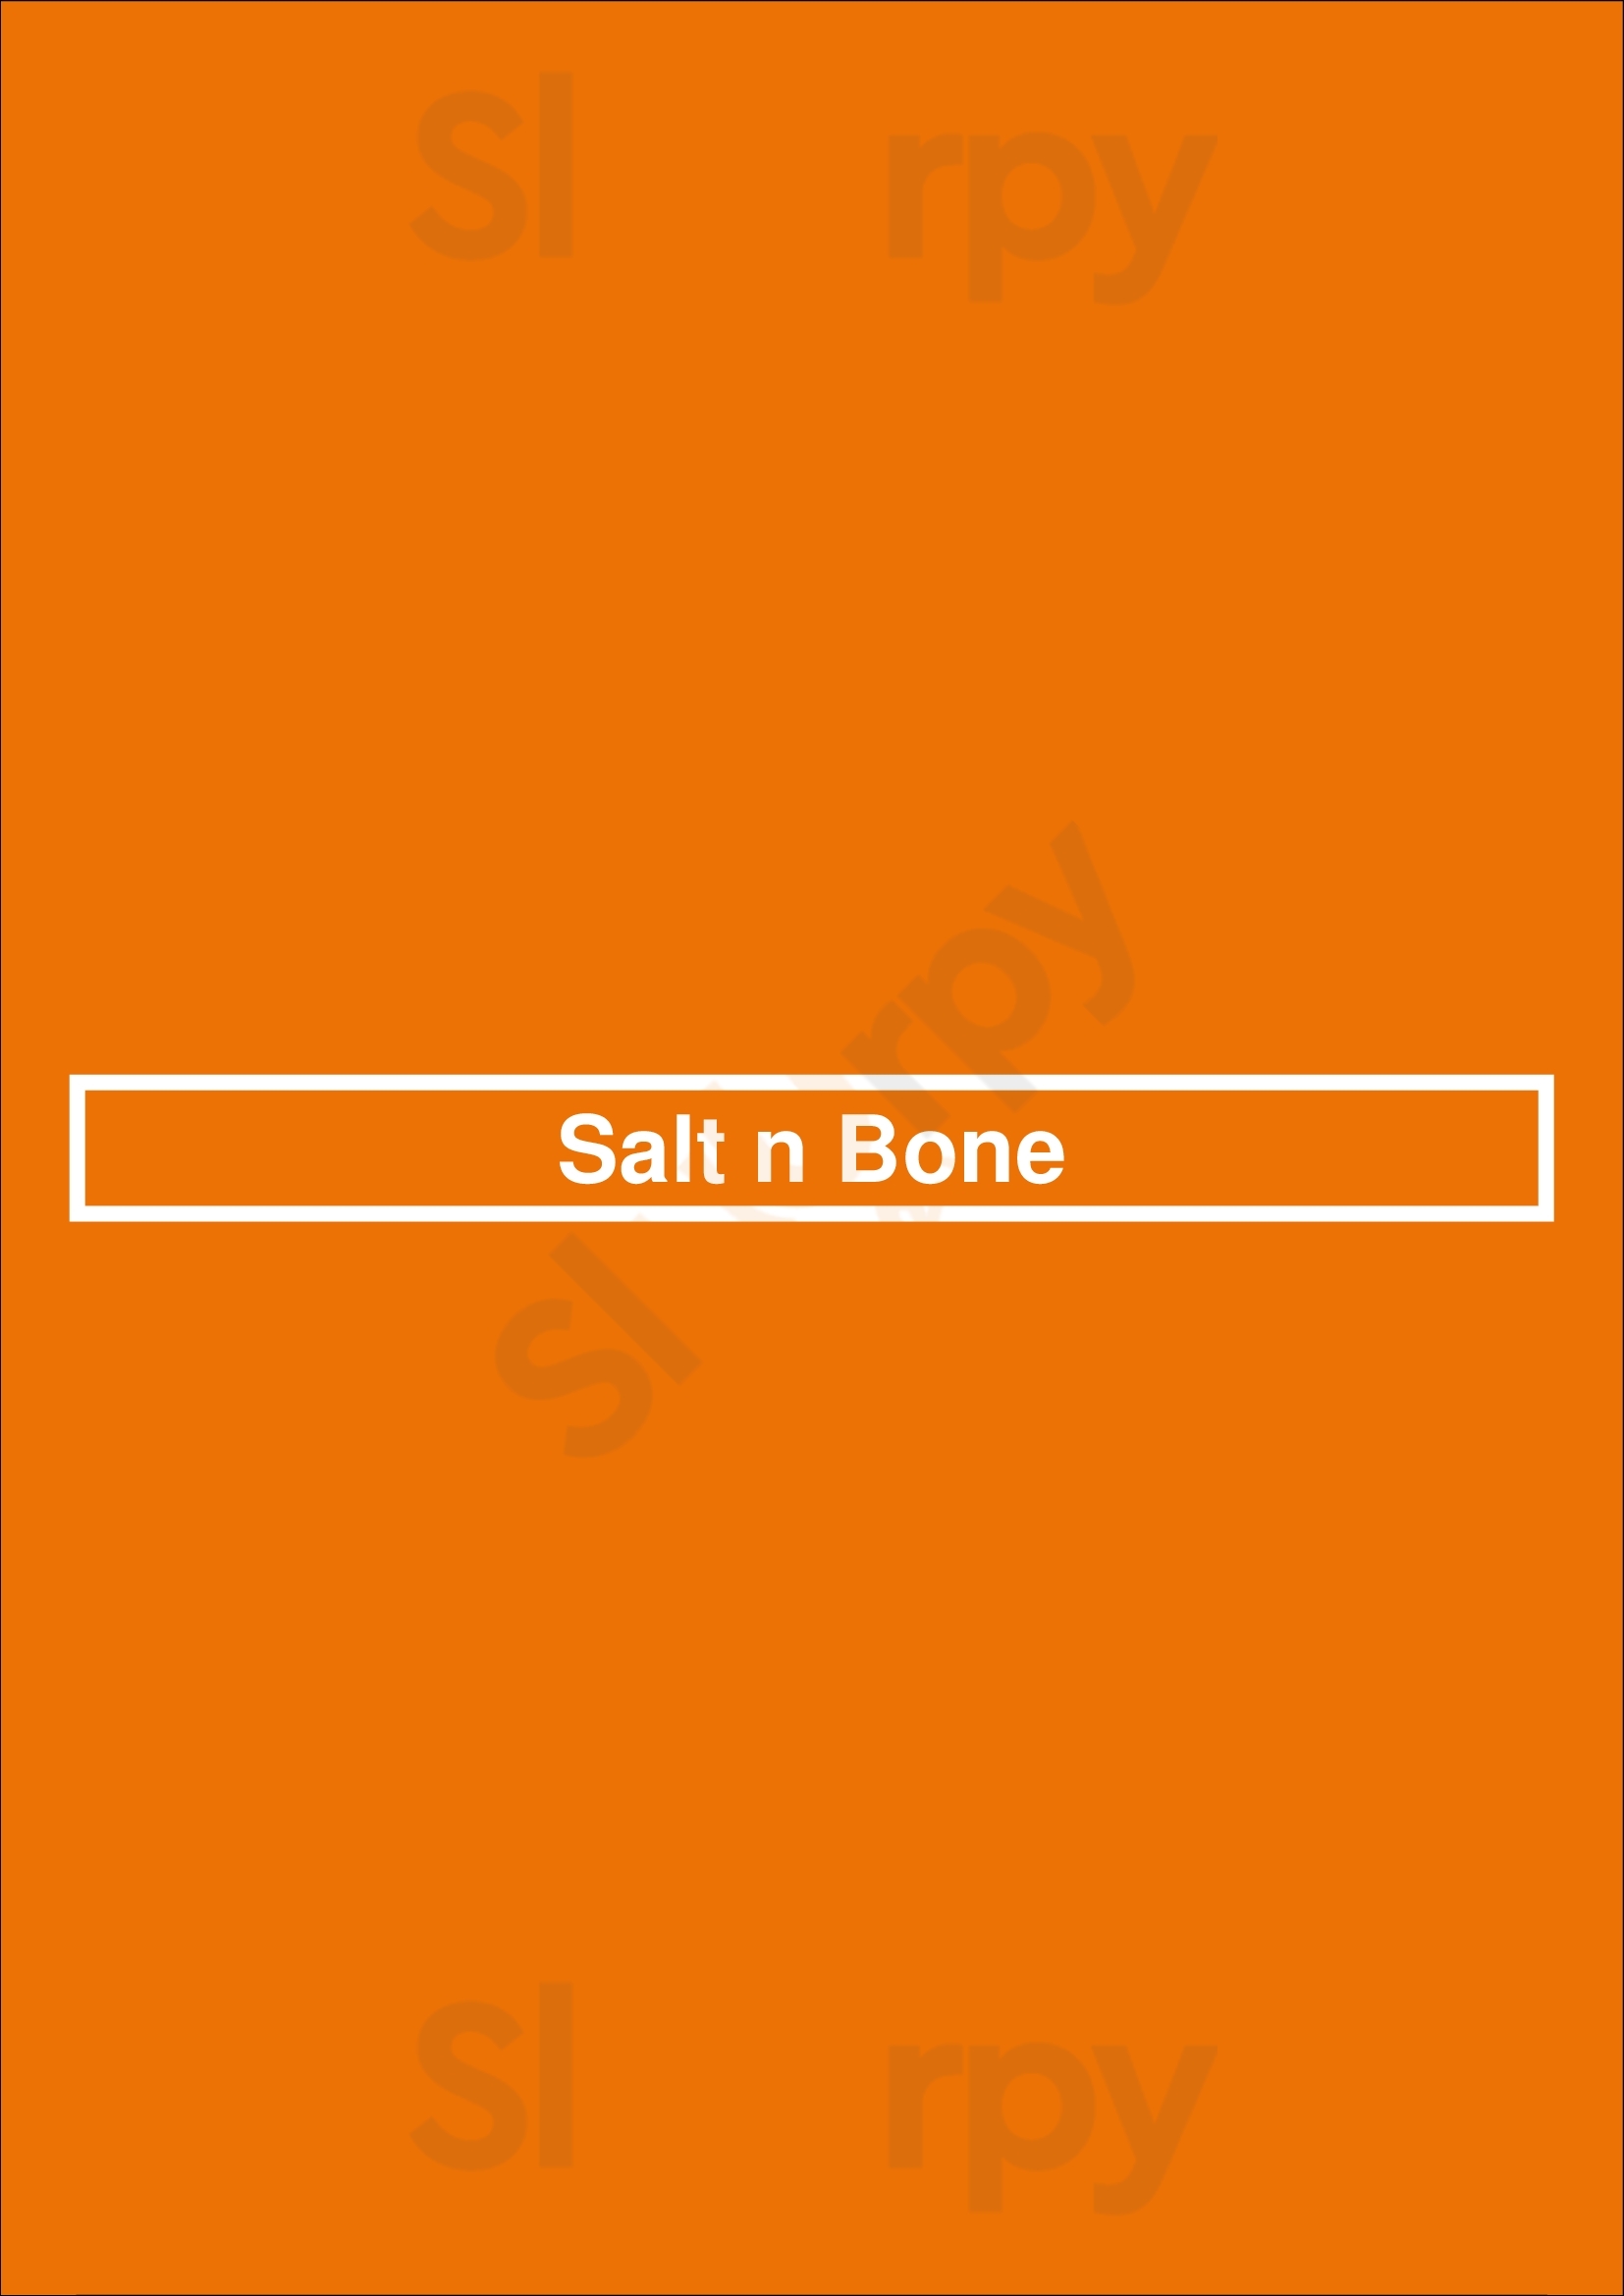 Salt N Bone Berlin Menu - 1